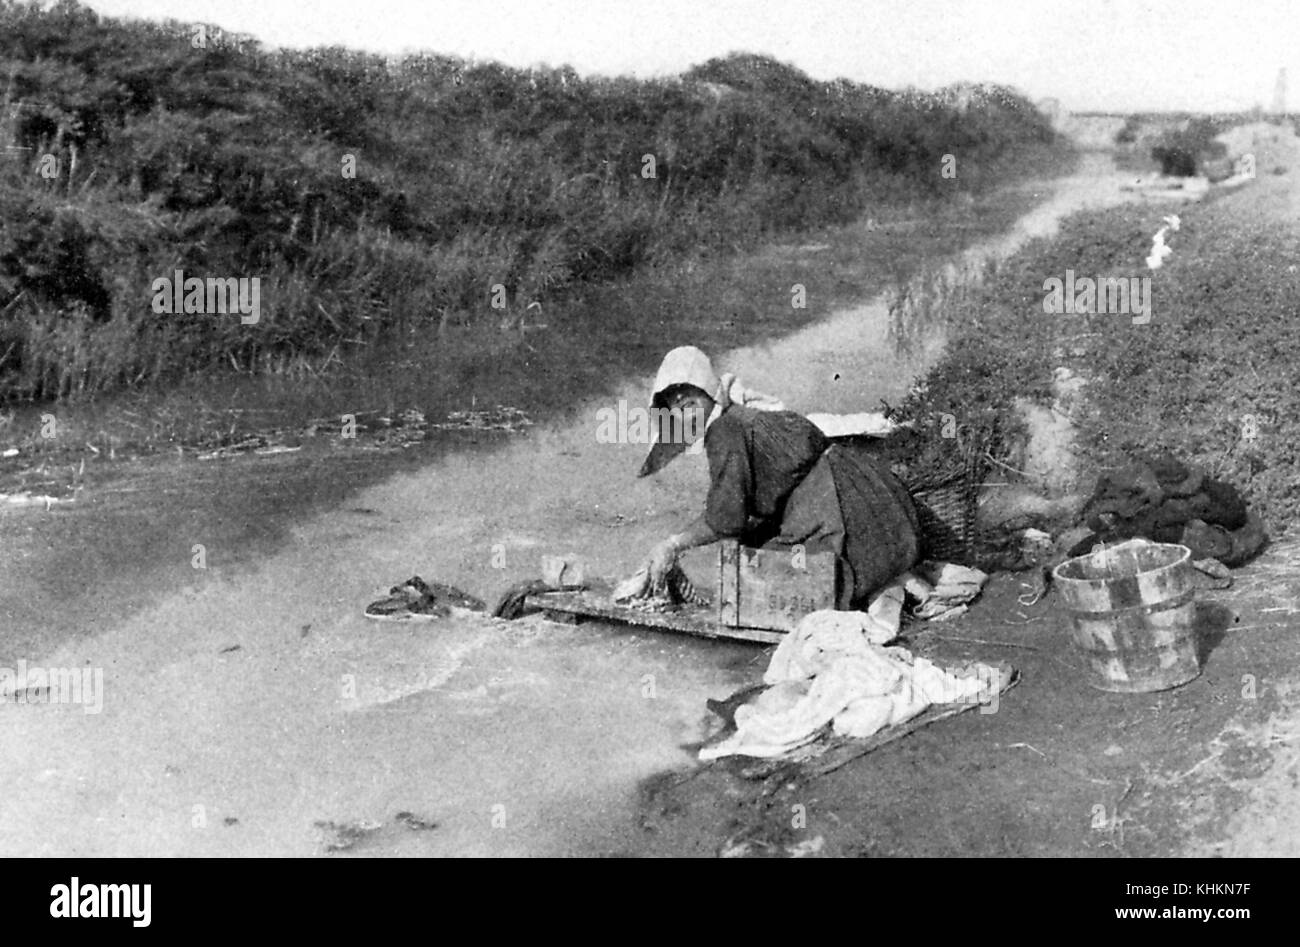 Ein Foto von einer Frau Wäsche in einem kleinen Betrieb Körper von Wasser, sie trägt einfache Kleidung und einen Hut, während im Schlamm am Rande des Wassers kniend, kurzes Gras wächst an den Rand des Wassers, Camargue, Frankreich, Juli, 1922. Stockfoto